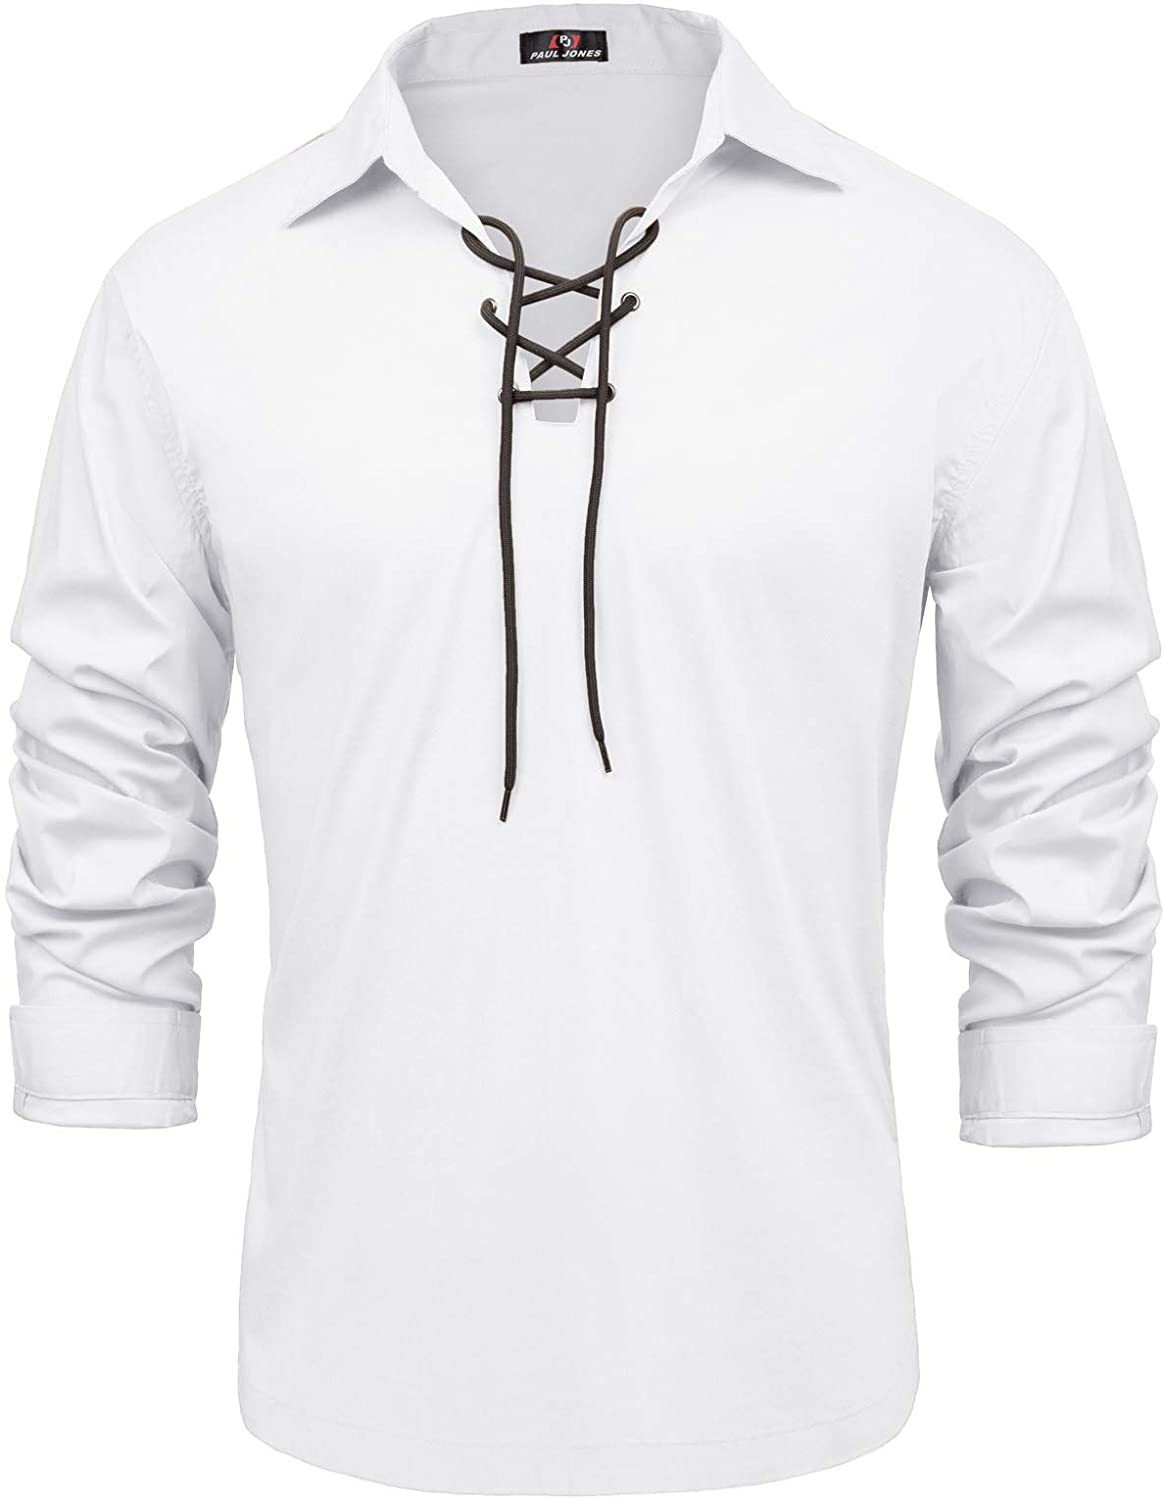 PJ PAUL JONES Mens Cotton Scottish Jacobite Ghillie Kilt Lace-Up Shirt Long Sleeve 